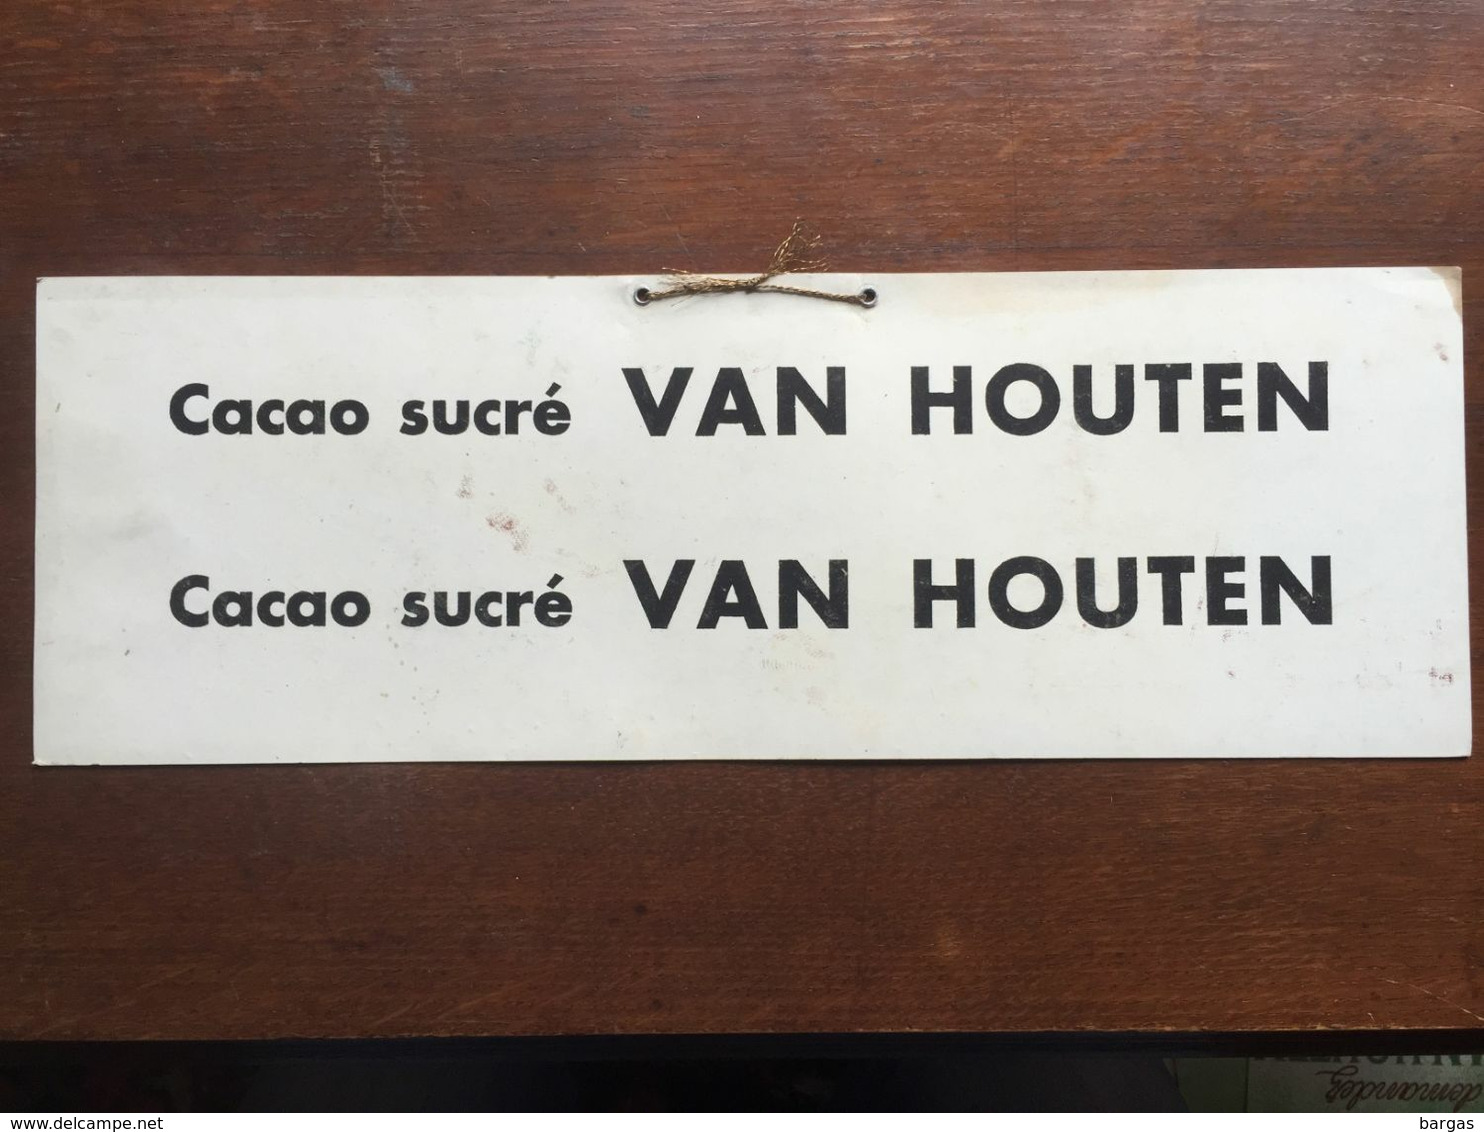 Carton Publicitaire à Suspendre Cacao Chocolat Van Houten - Affiches